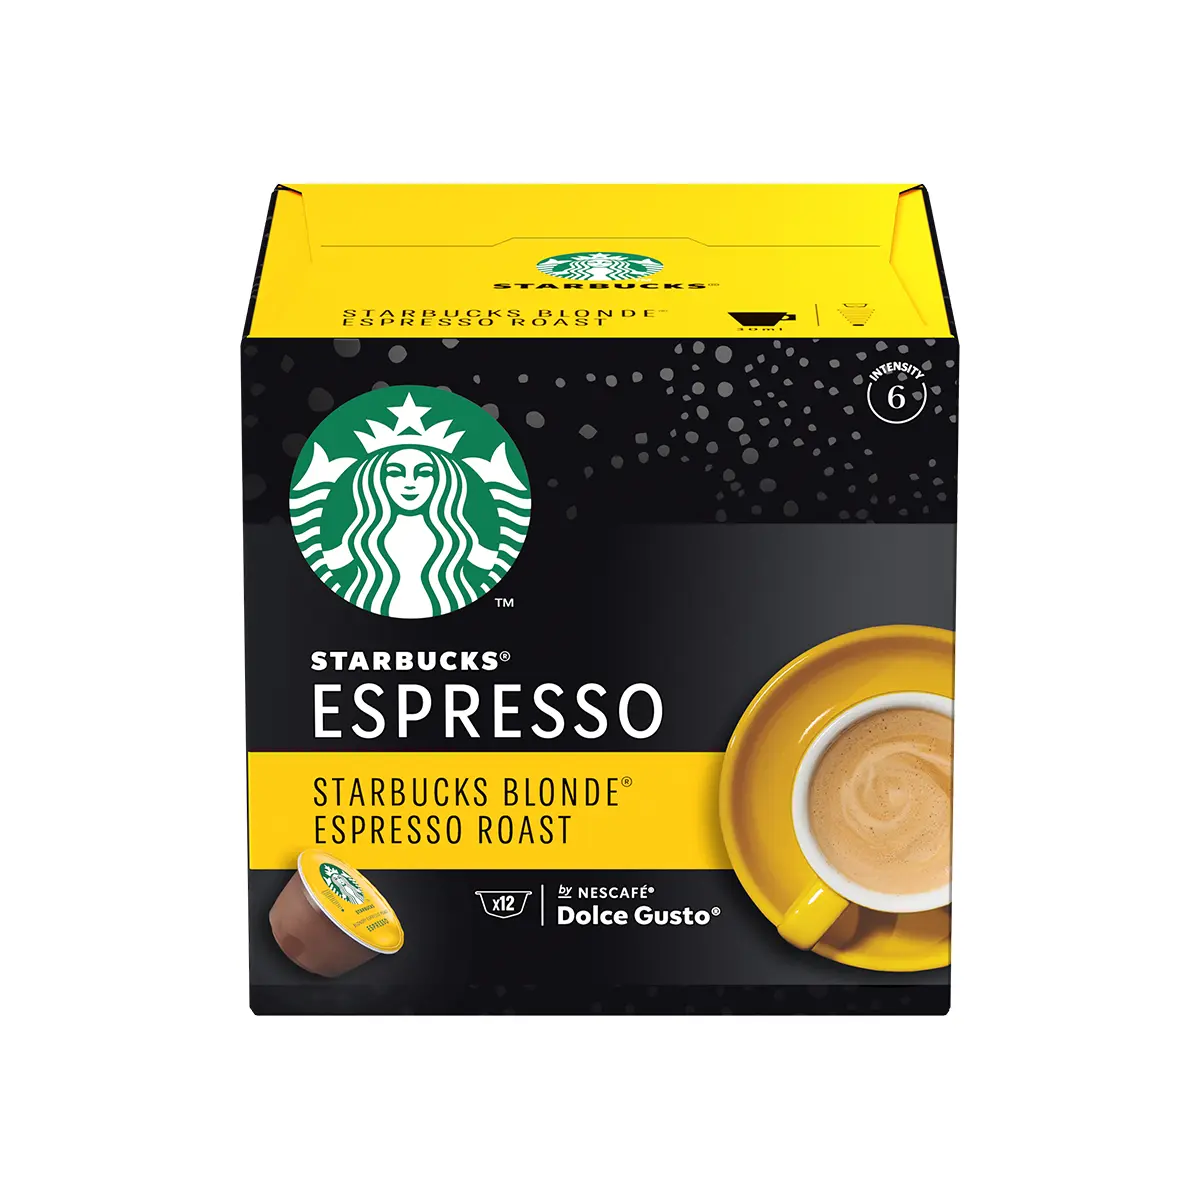 Capsule cafea Starbucks Blonde Espresso Roast by Nescafe Dolce Gusto, prajire usoara, cutie cu 12 capsule, 66g